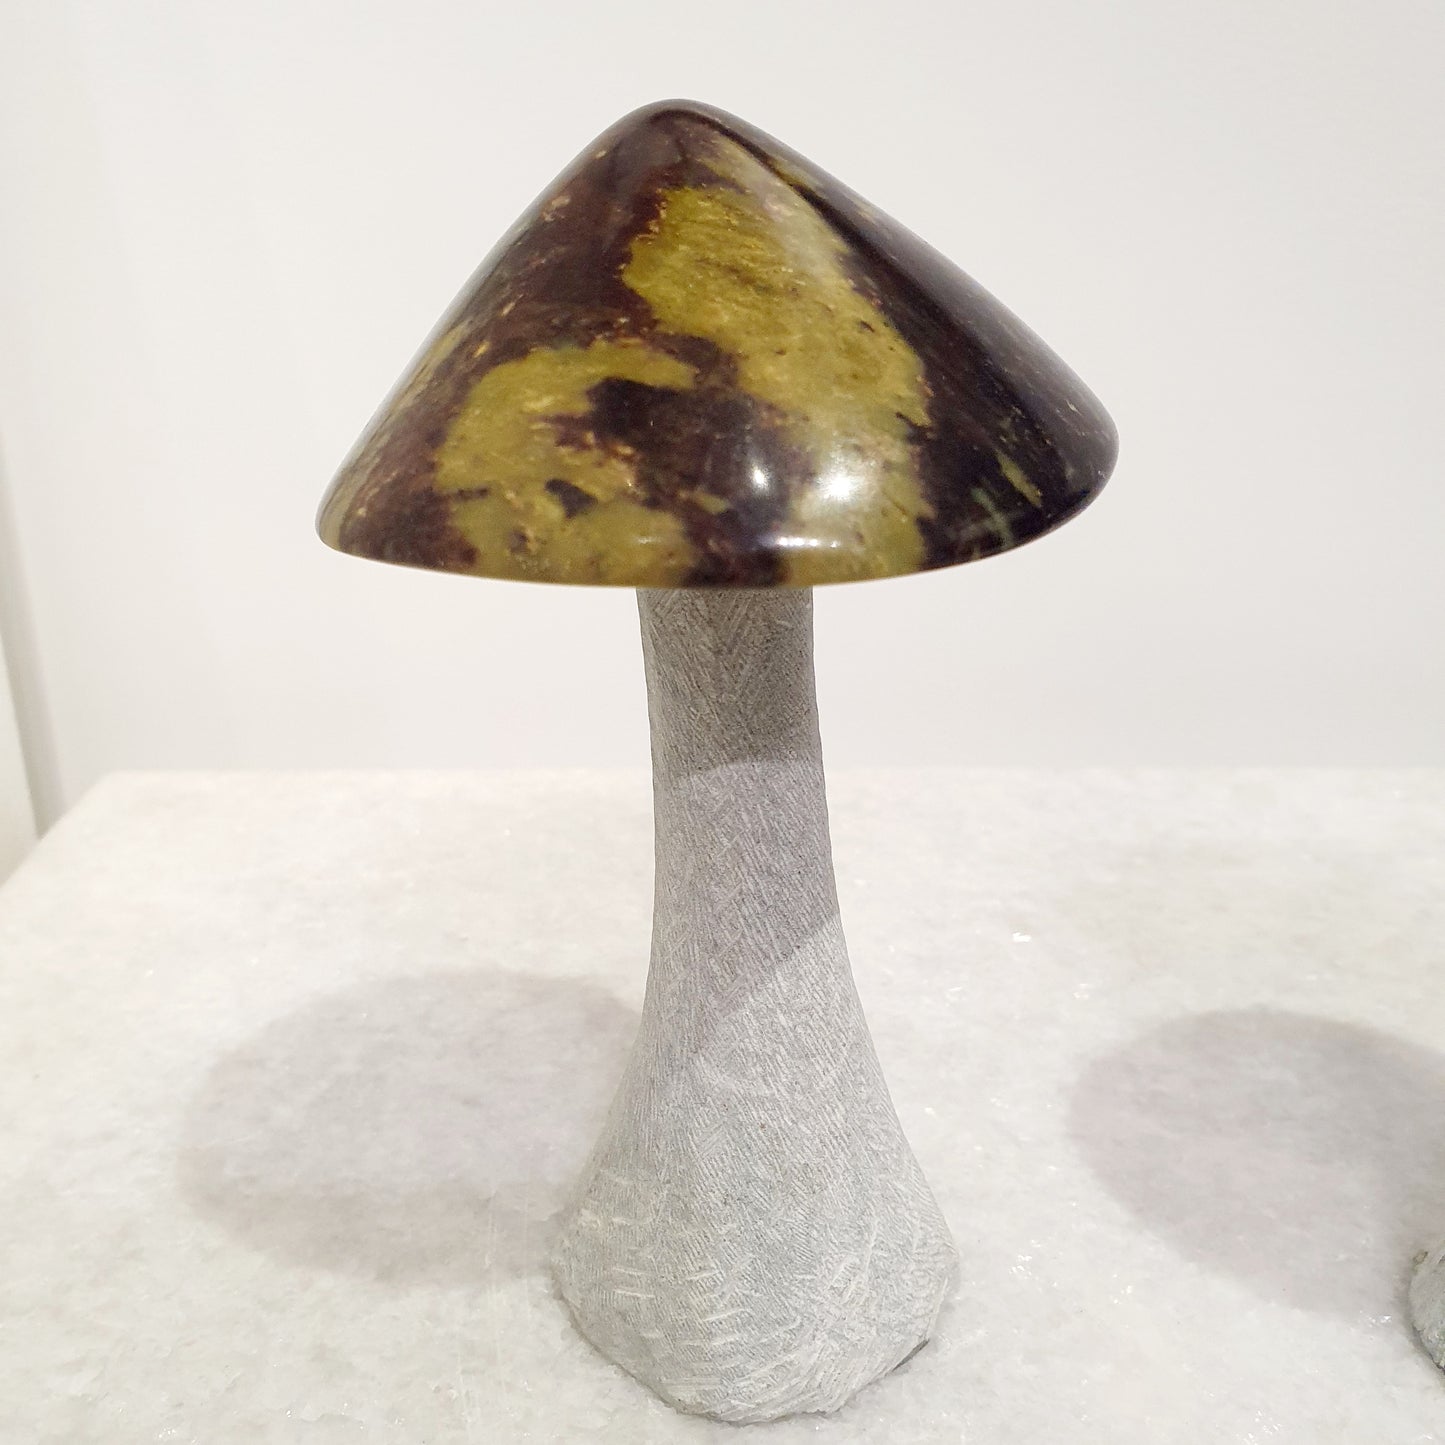 Stone Mushroom